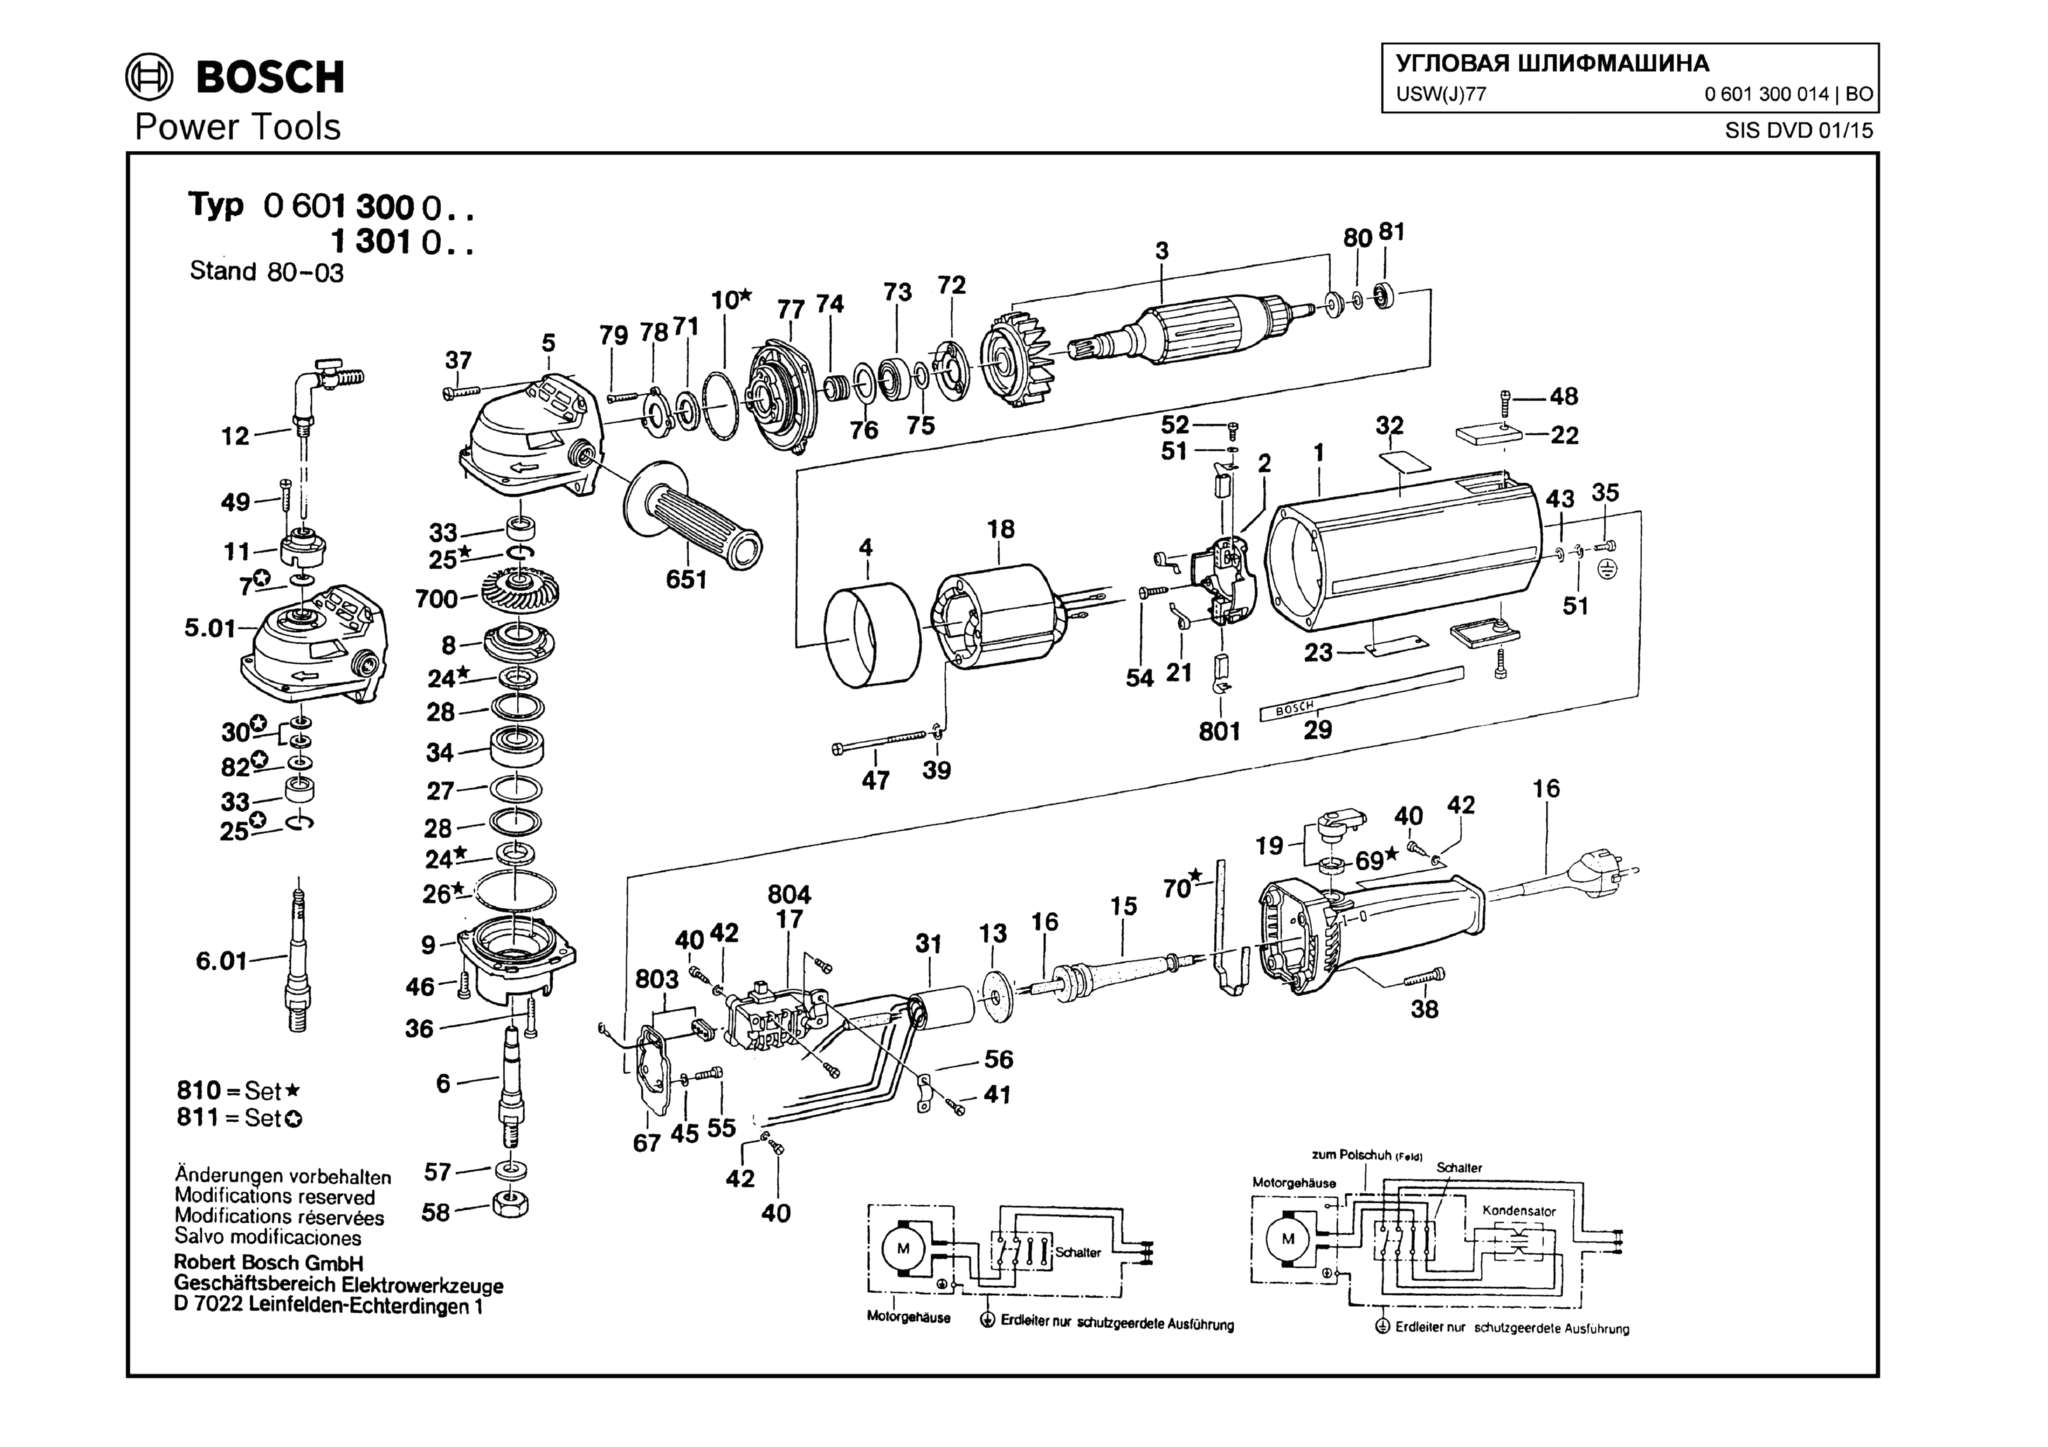 Запчасти, схема и деталировка Bosch USW(J)77 (ТИП 0601300014)